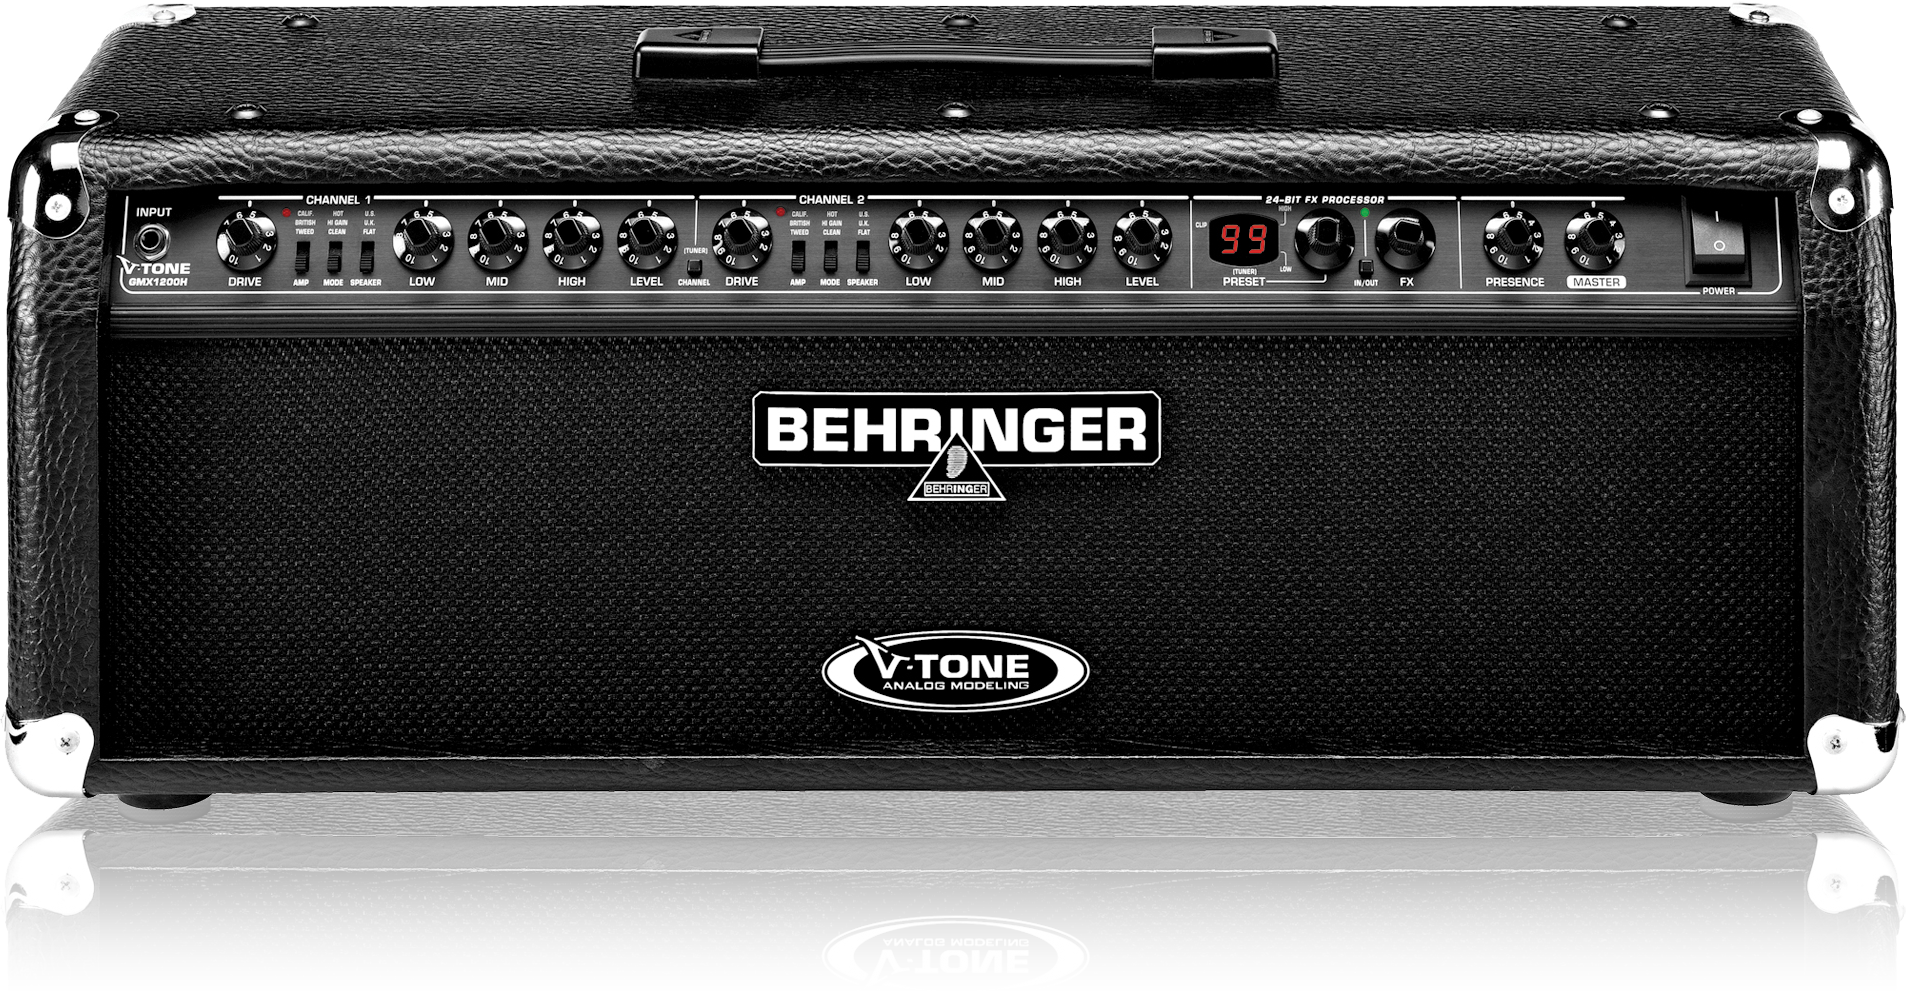 V toned. Behringer гитарный усилитель. Behringer v-Tone голова усилитель. Комбоусилитель Behringer kx500. Гитарный усилитель Behringer Vintager.